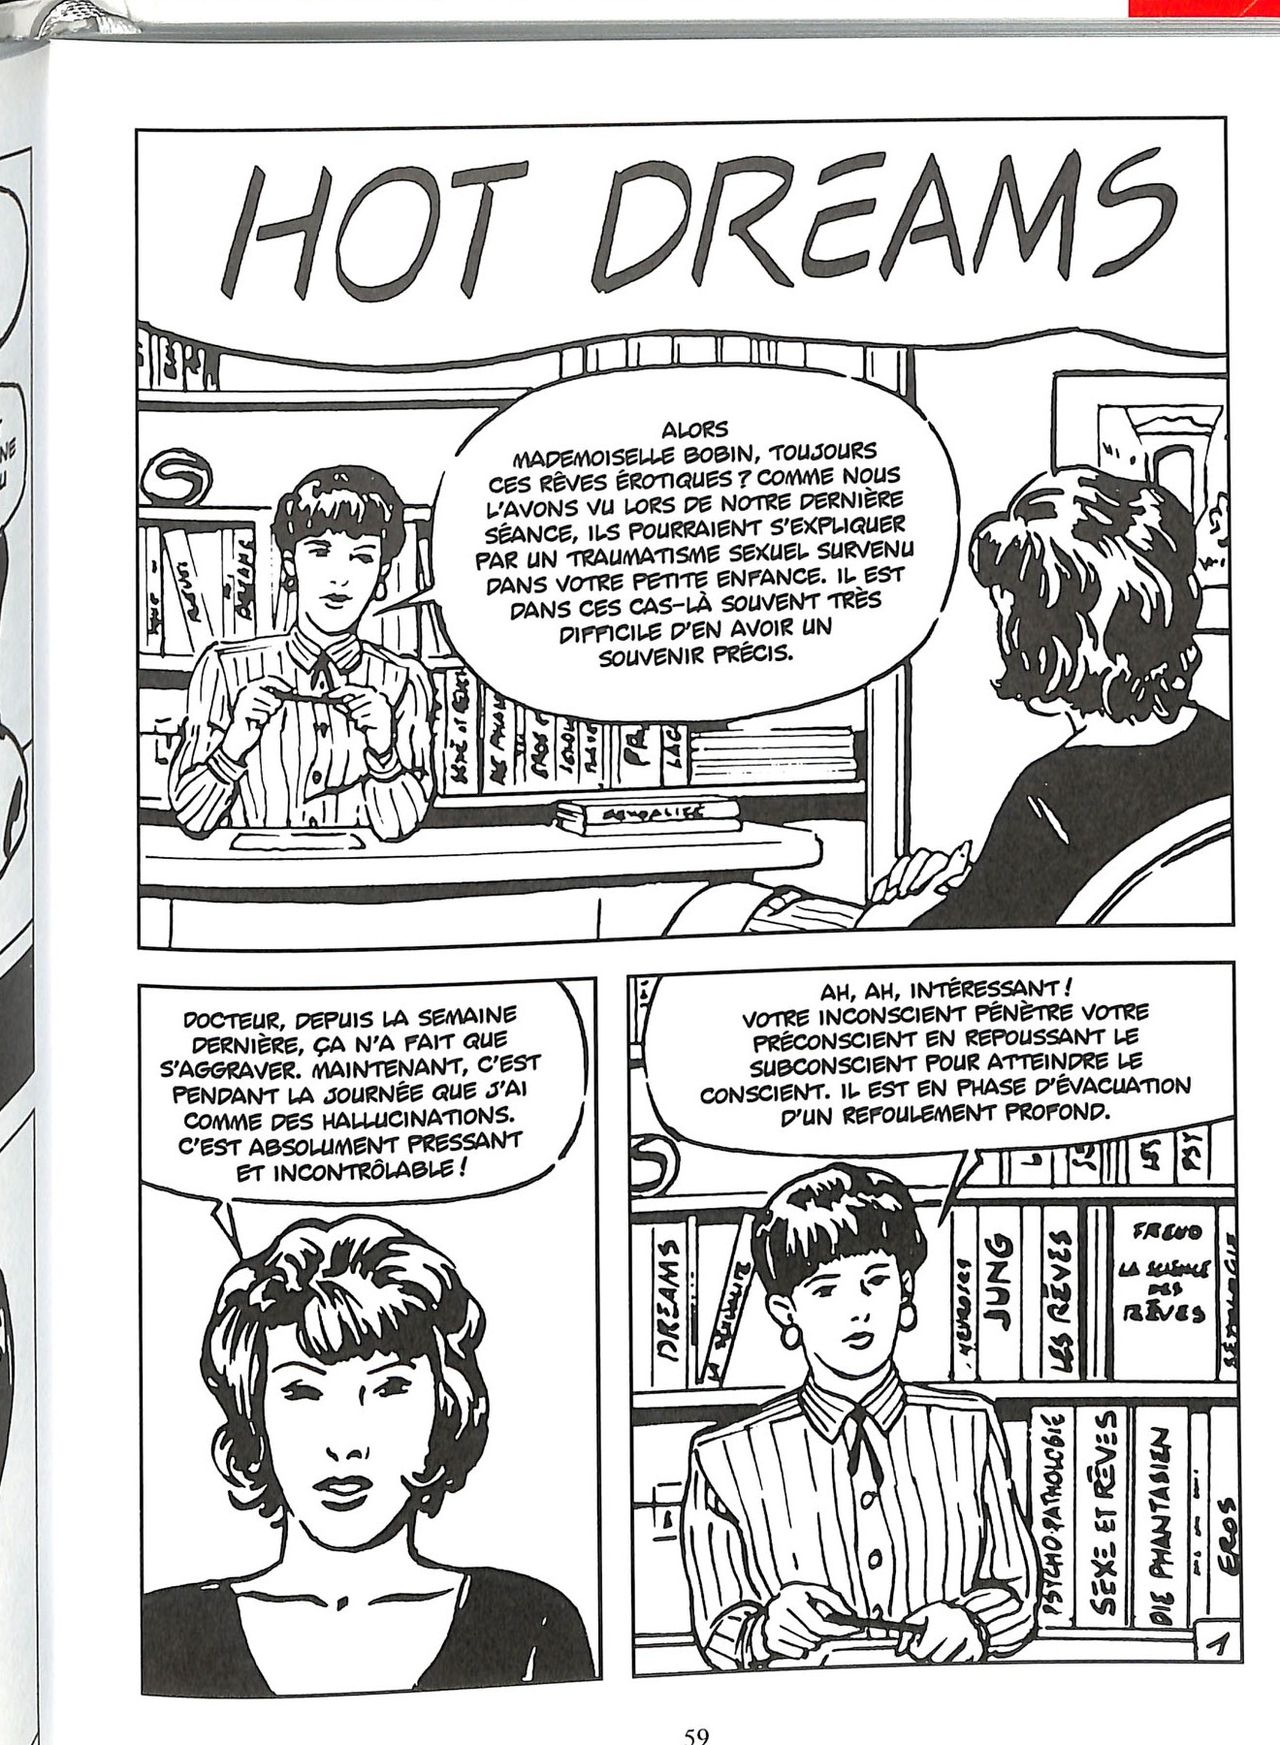 Hot Dreams numero d'image 60